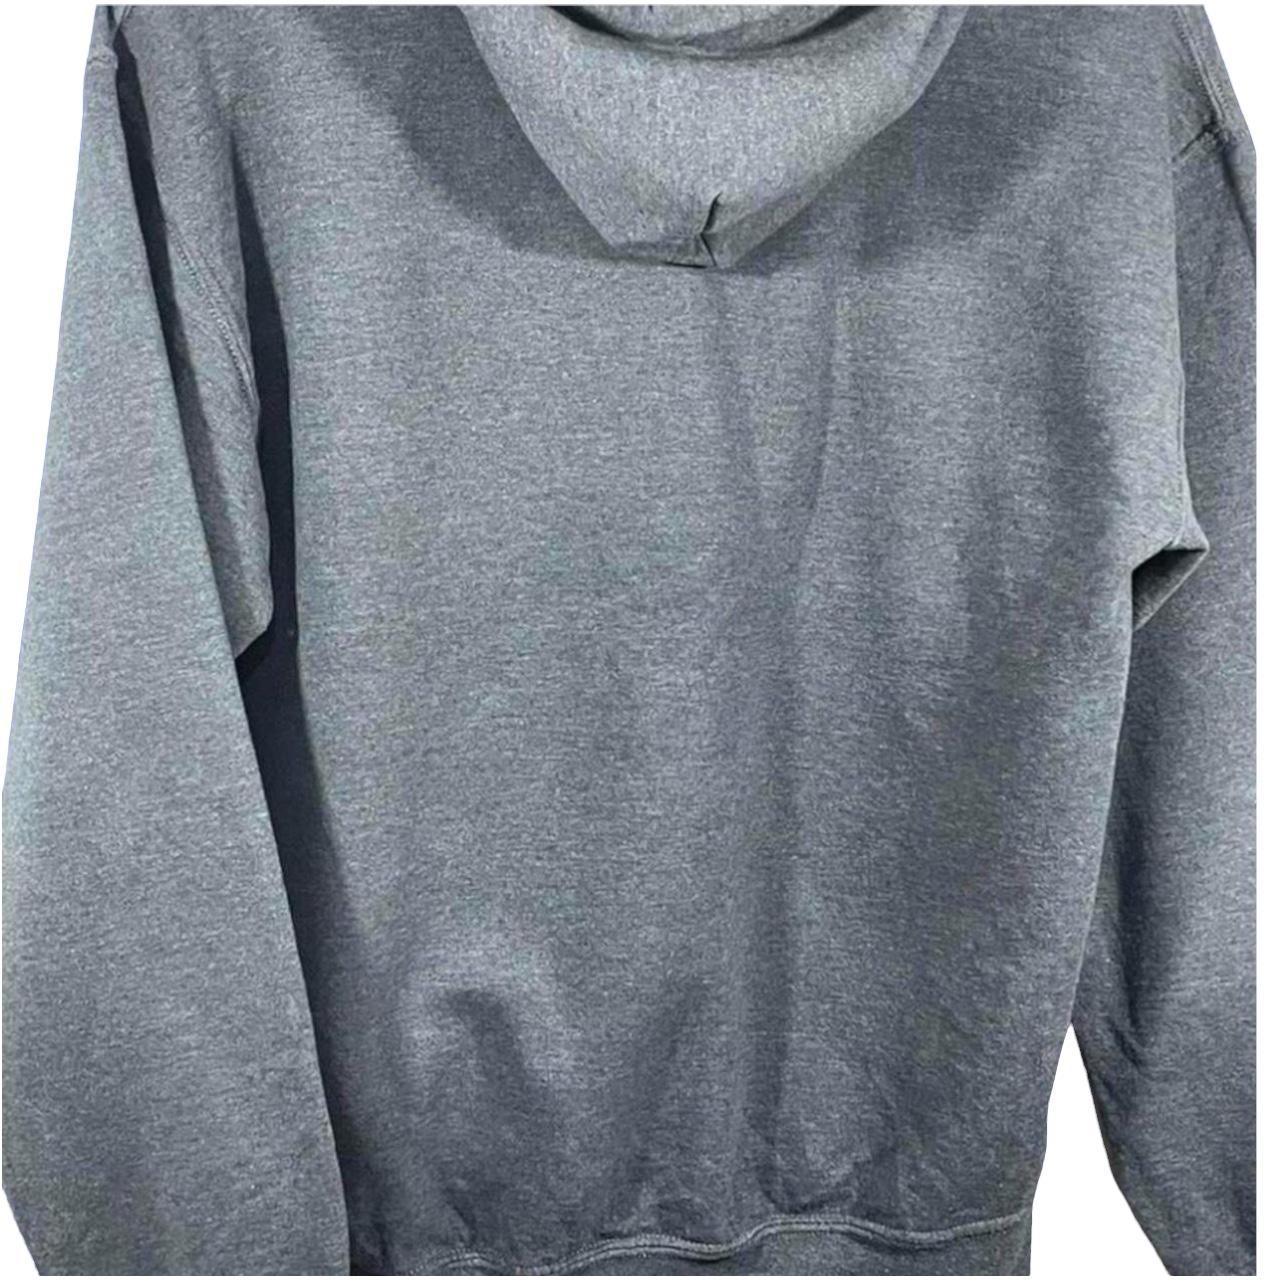 Grey Gildan hoodie with a print for De la salle... - Depop